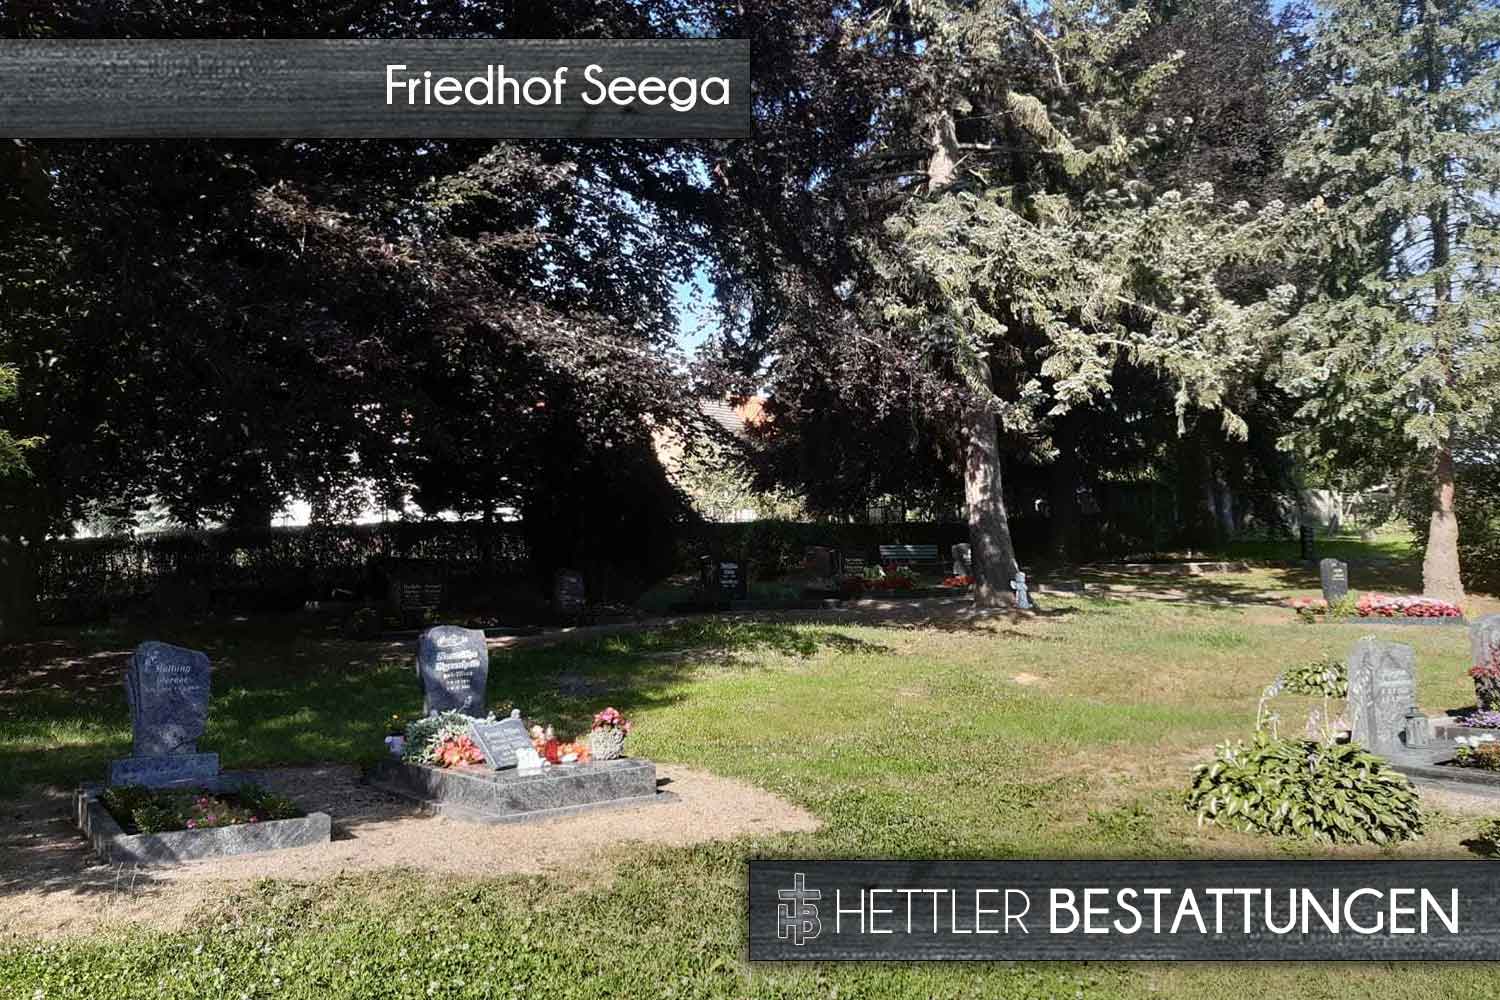 Friedhof in Seega. Ihr Ort des Abschieds mit Hettler Bestattungen.